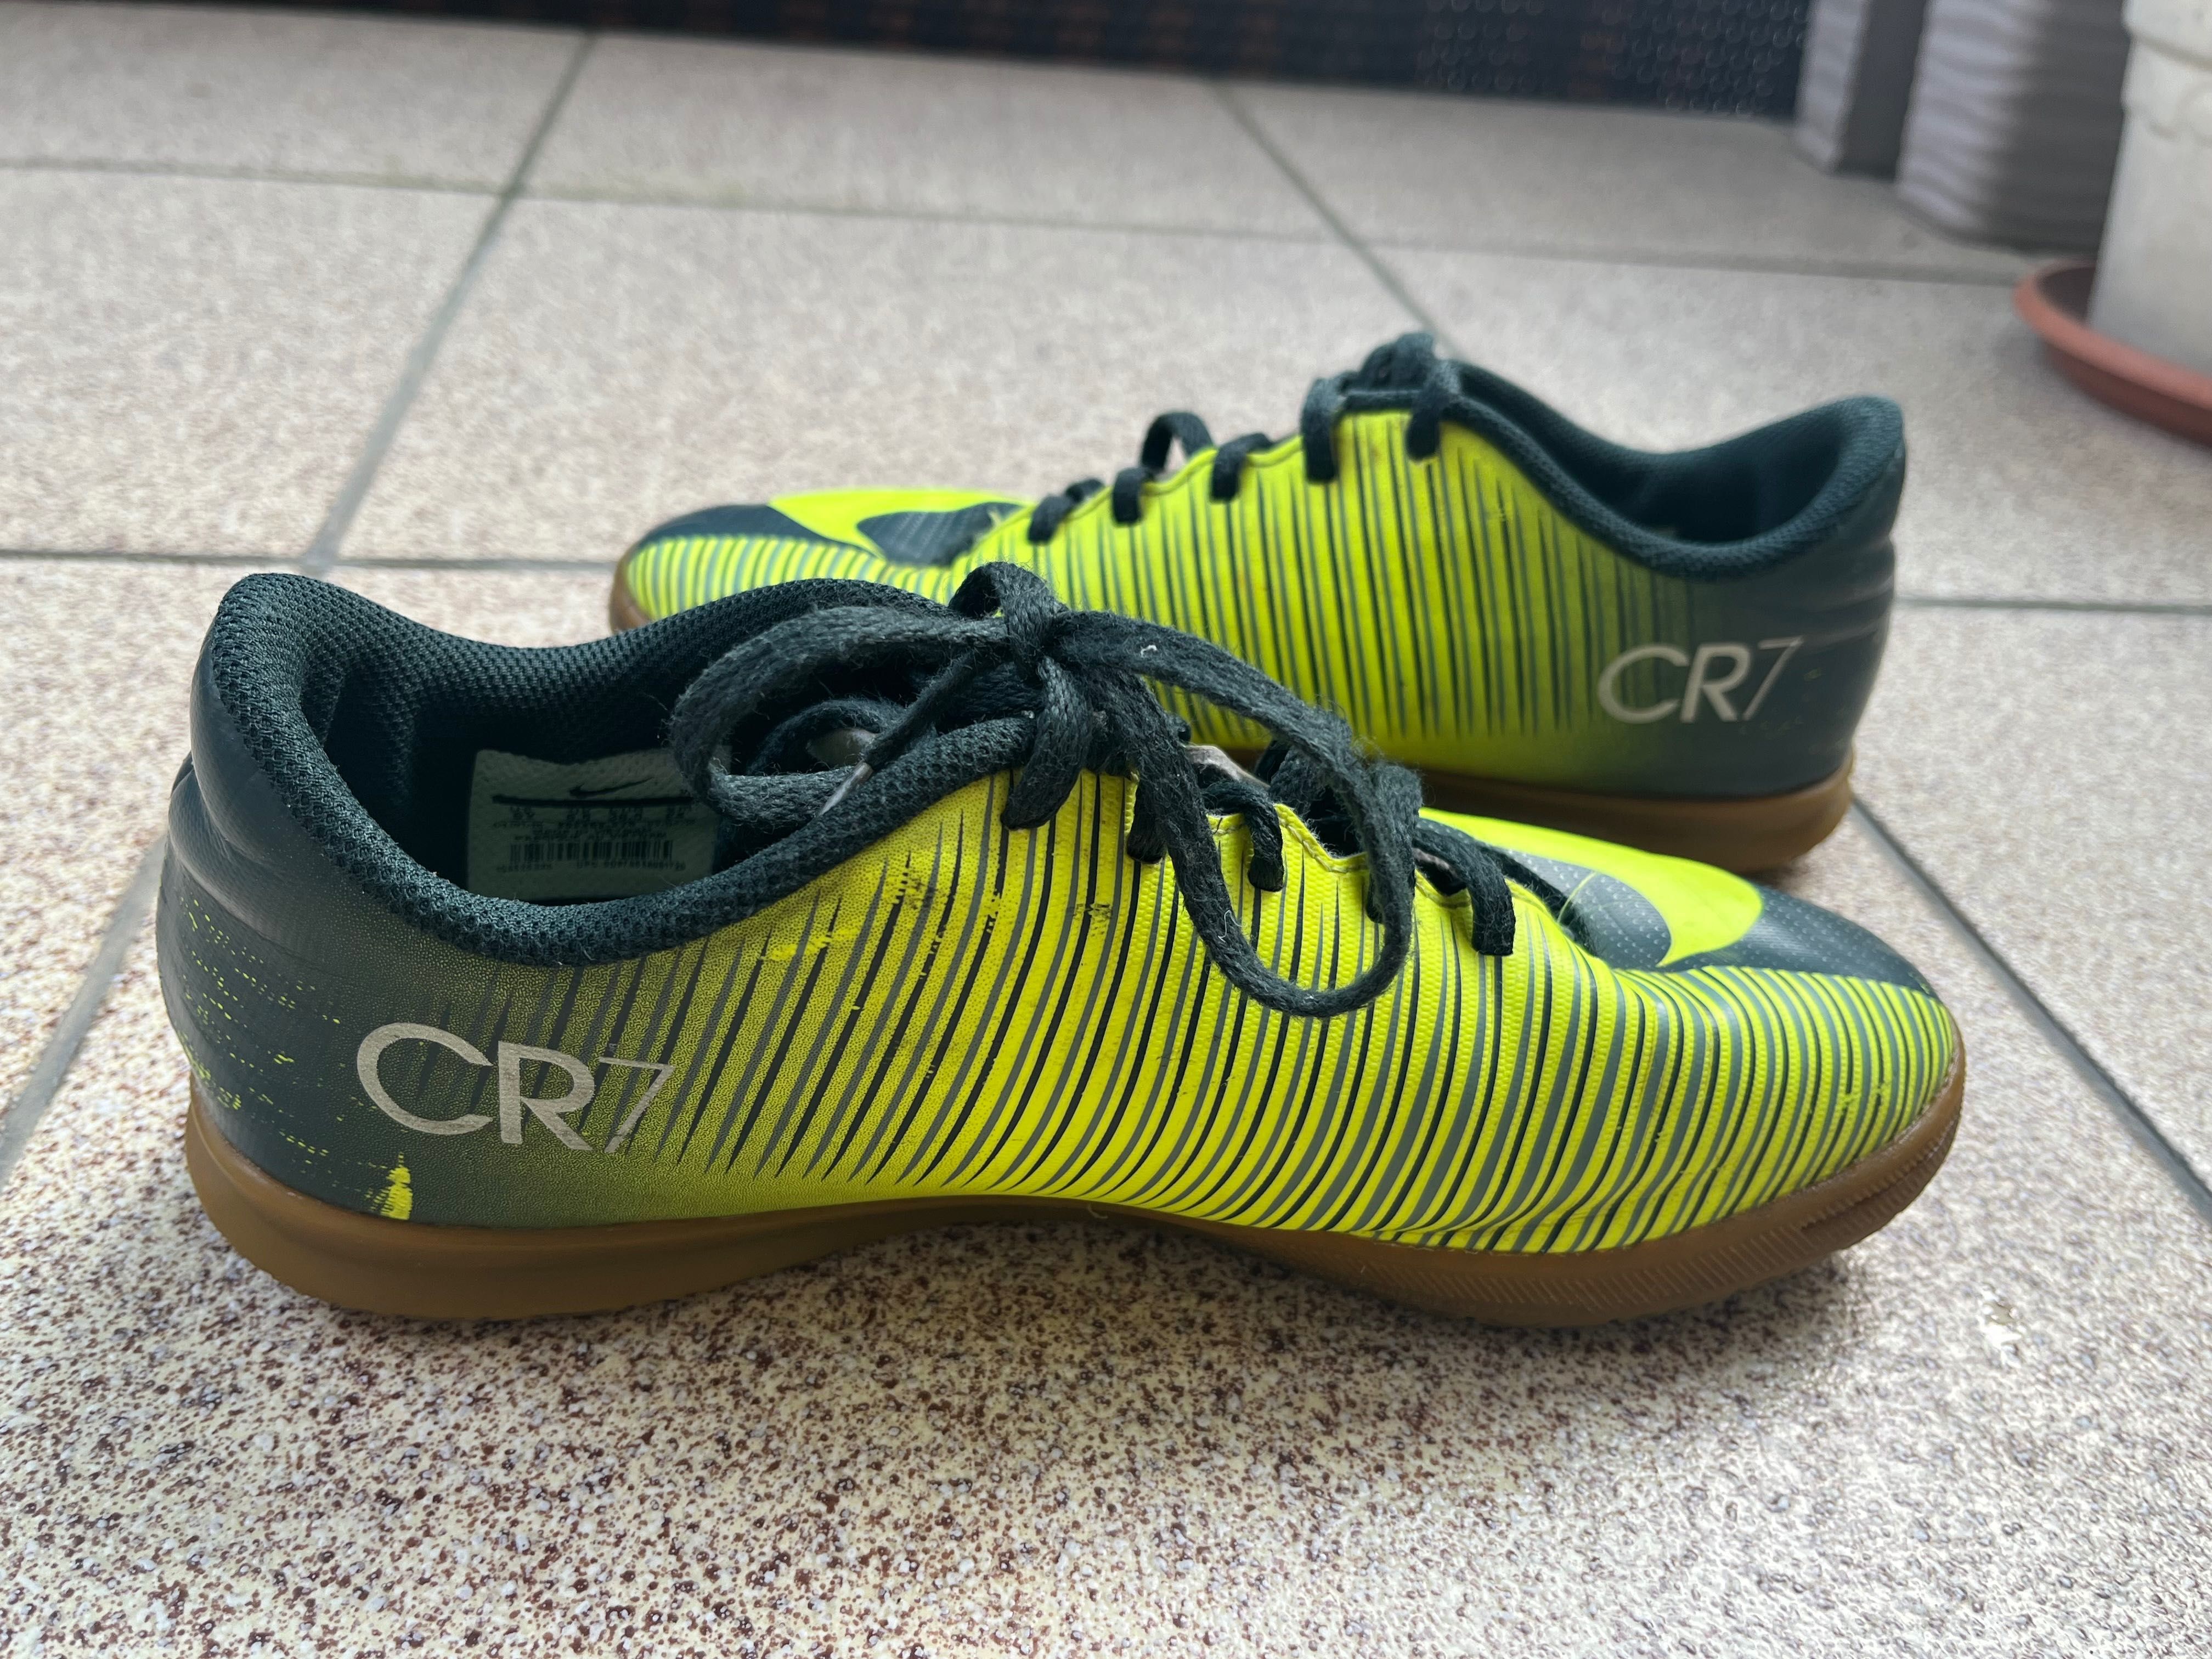 Buty halówki Nike mercurial rozm 38.5 CR7 Cristiano Ronaldo